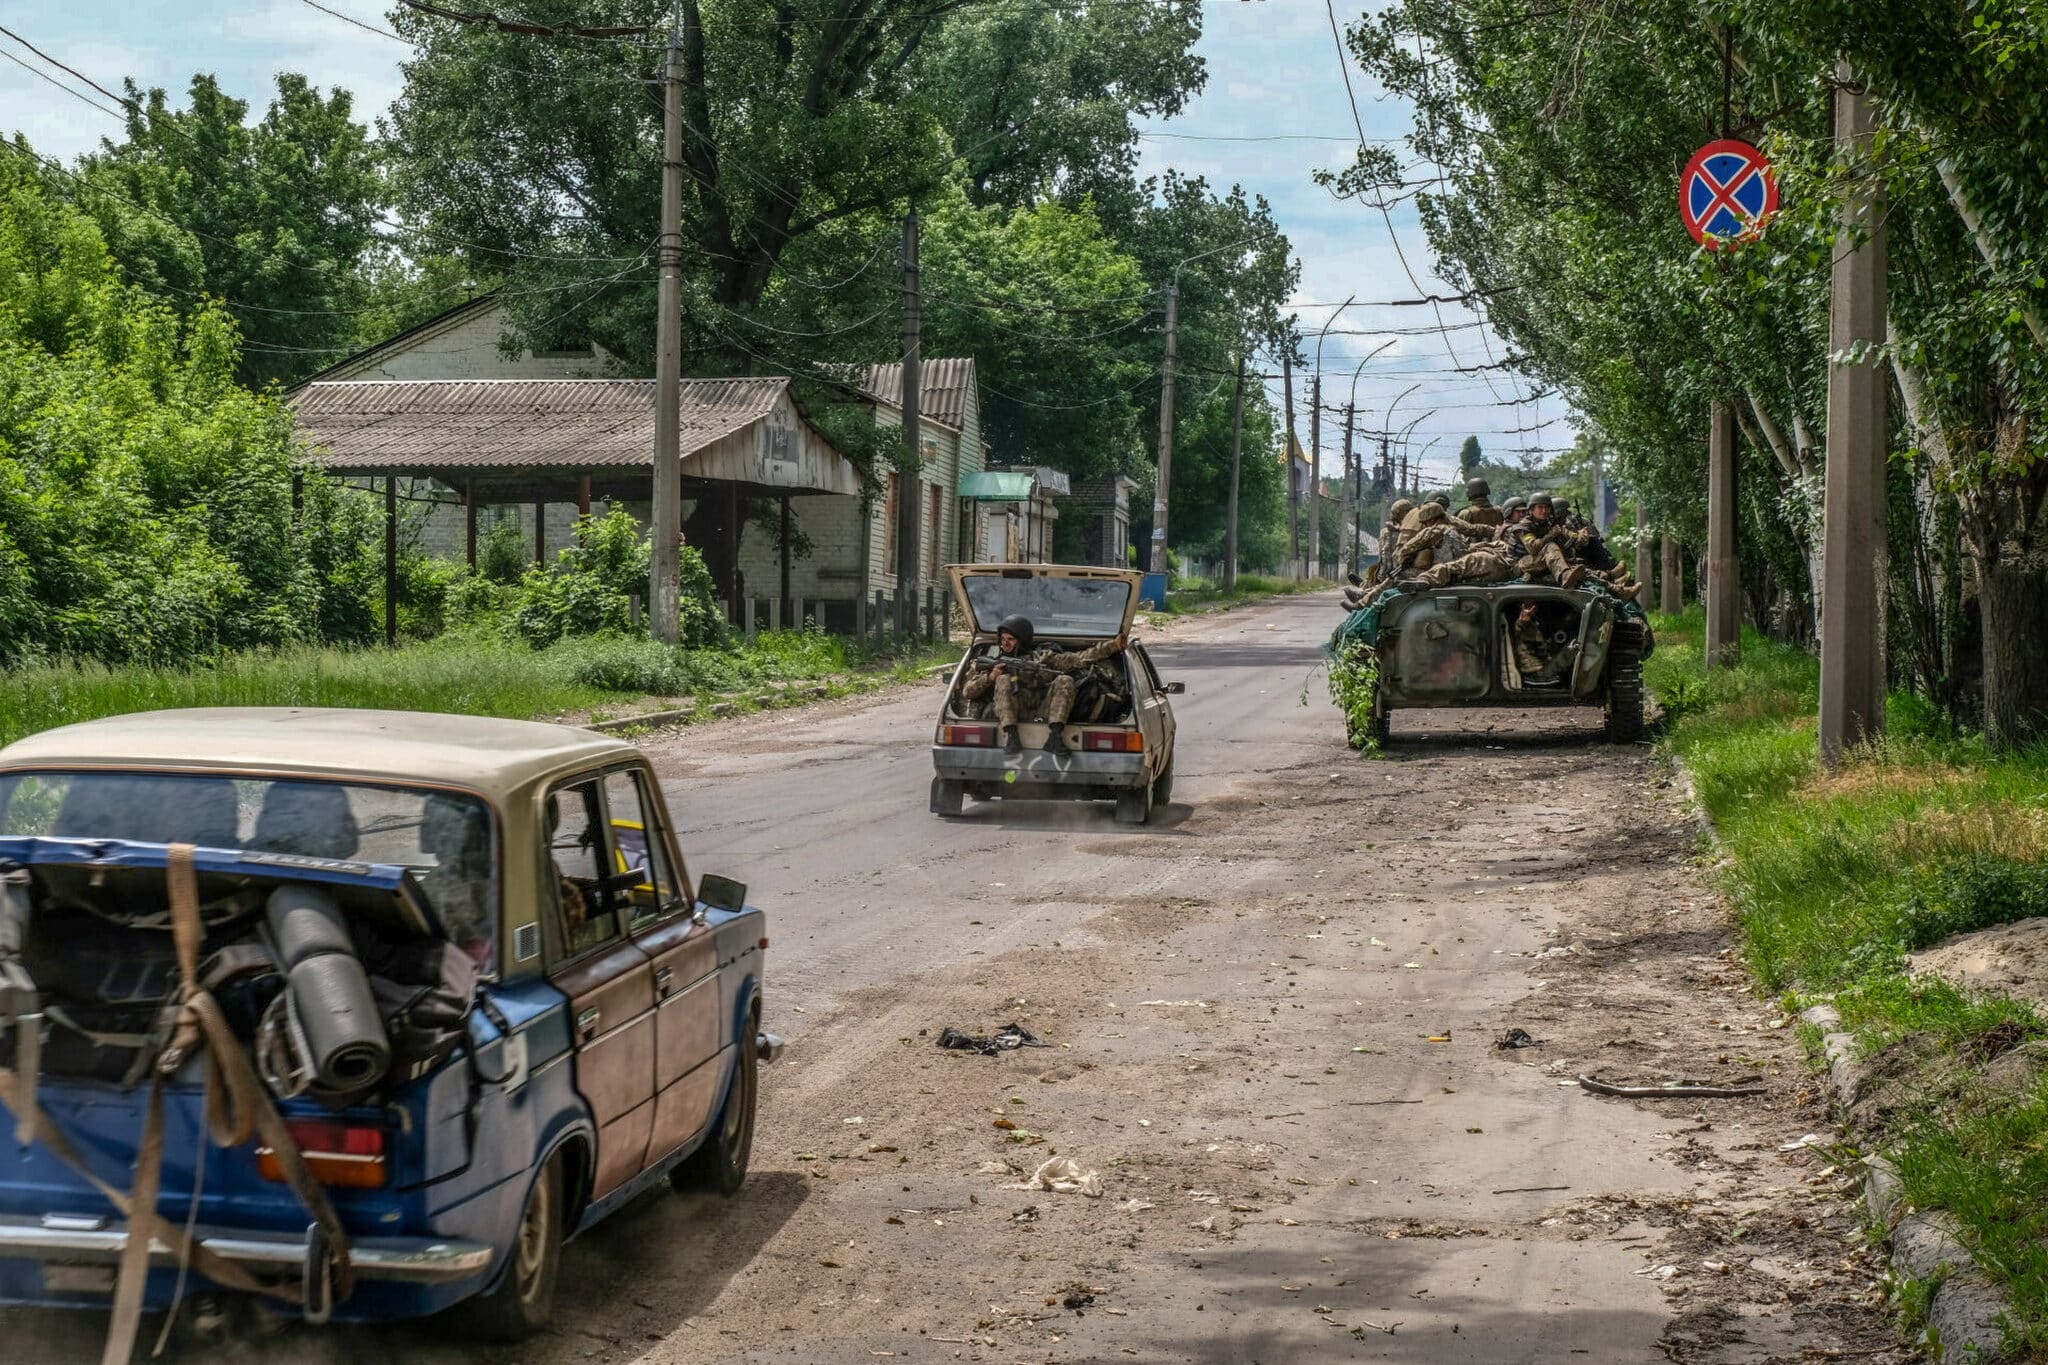 Soldados ucranianos se desplazan en coche y en tanque cerca de Severodonetsk